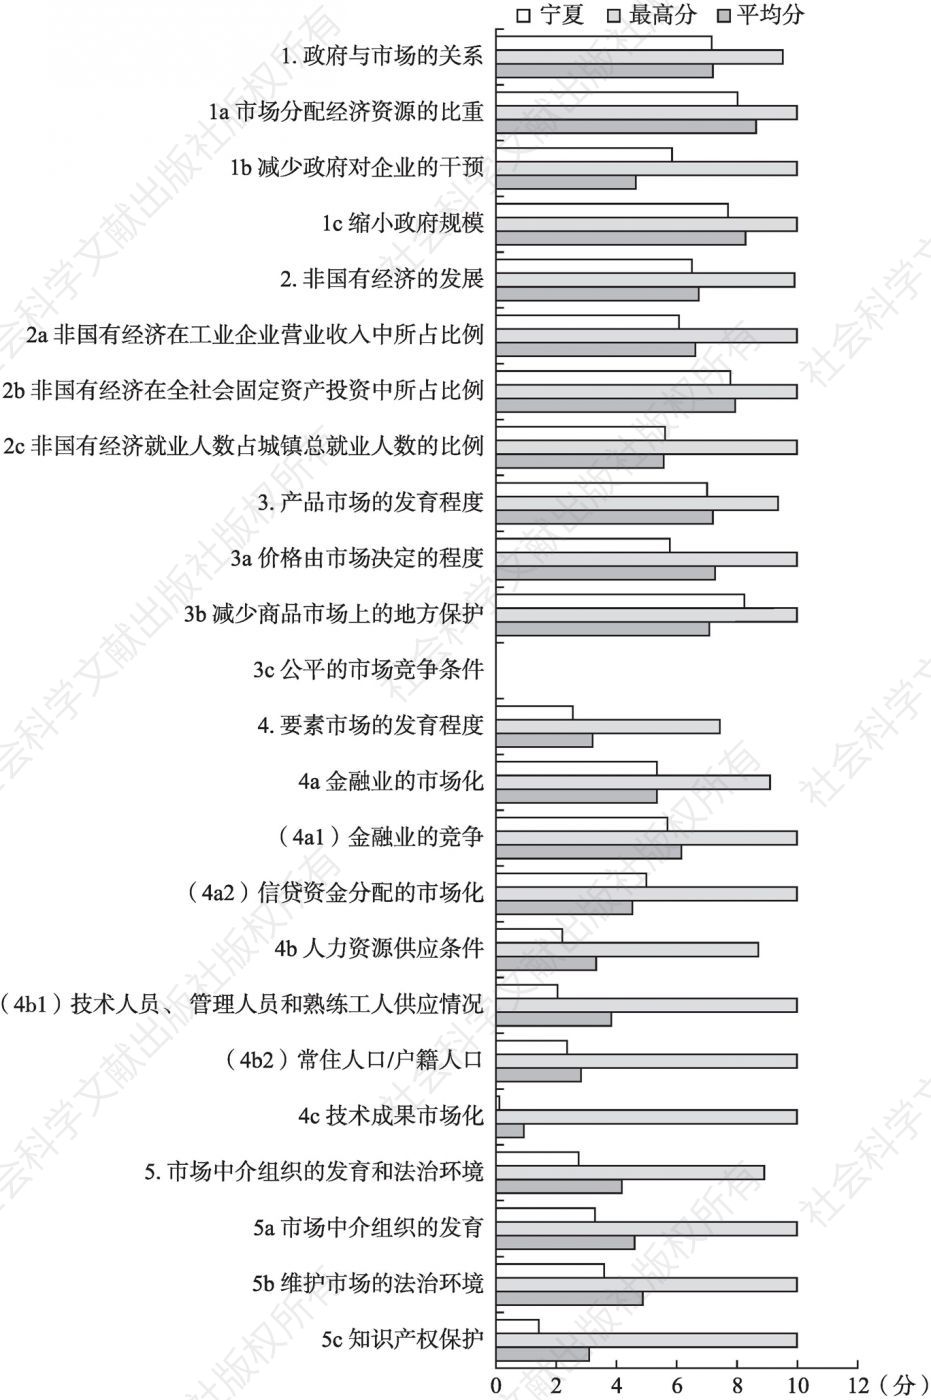 2016年宁夏市场化各方面指数和分项指数与全国最高分及平均分的比较